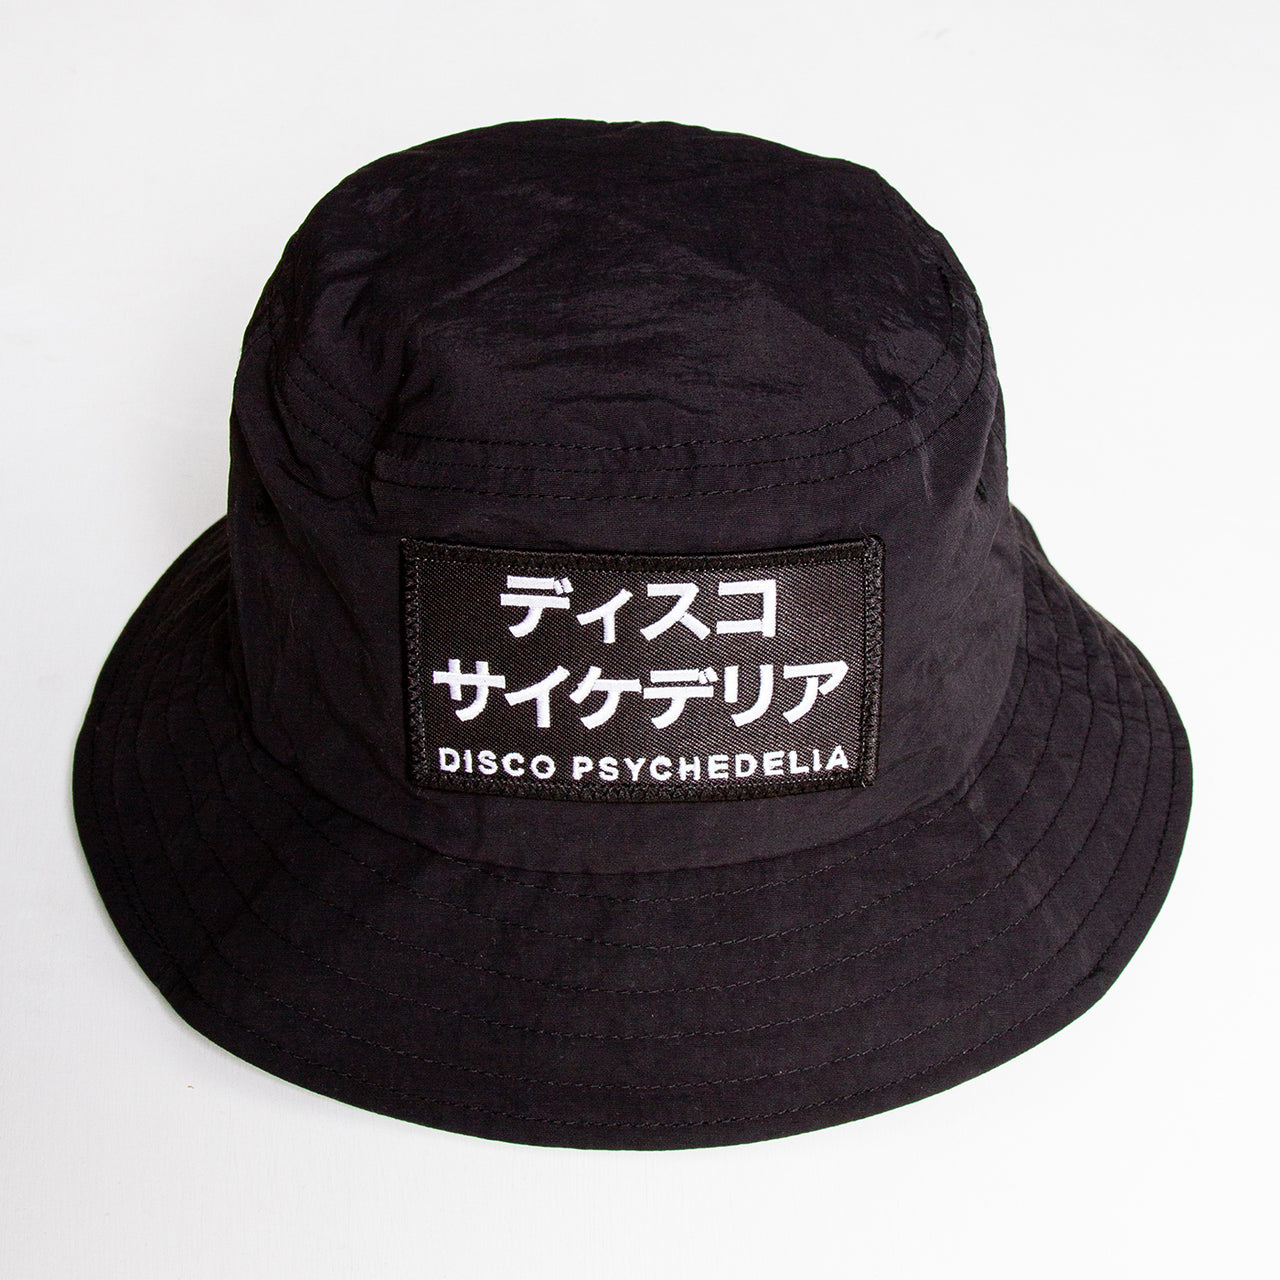 Disco Psychedelia - Water-repellent Bucket Hat - Black